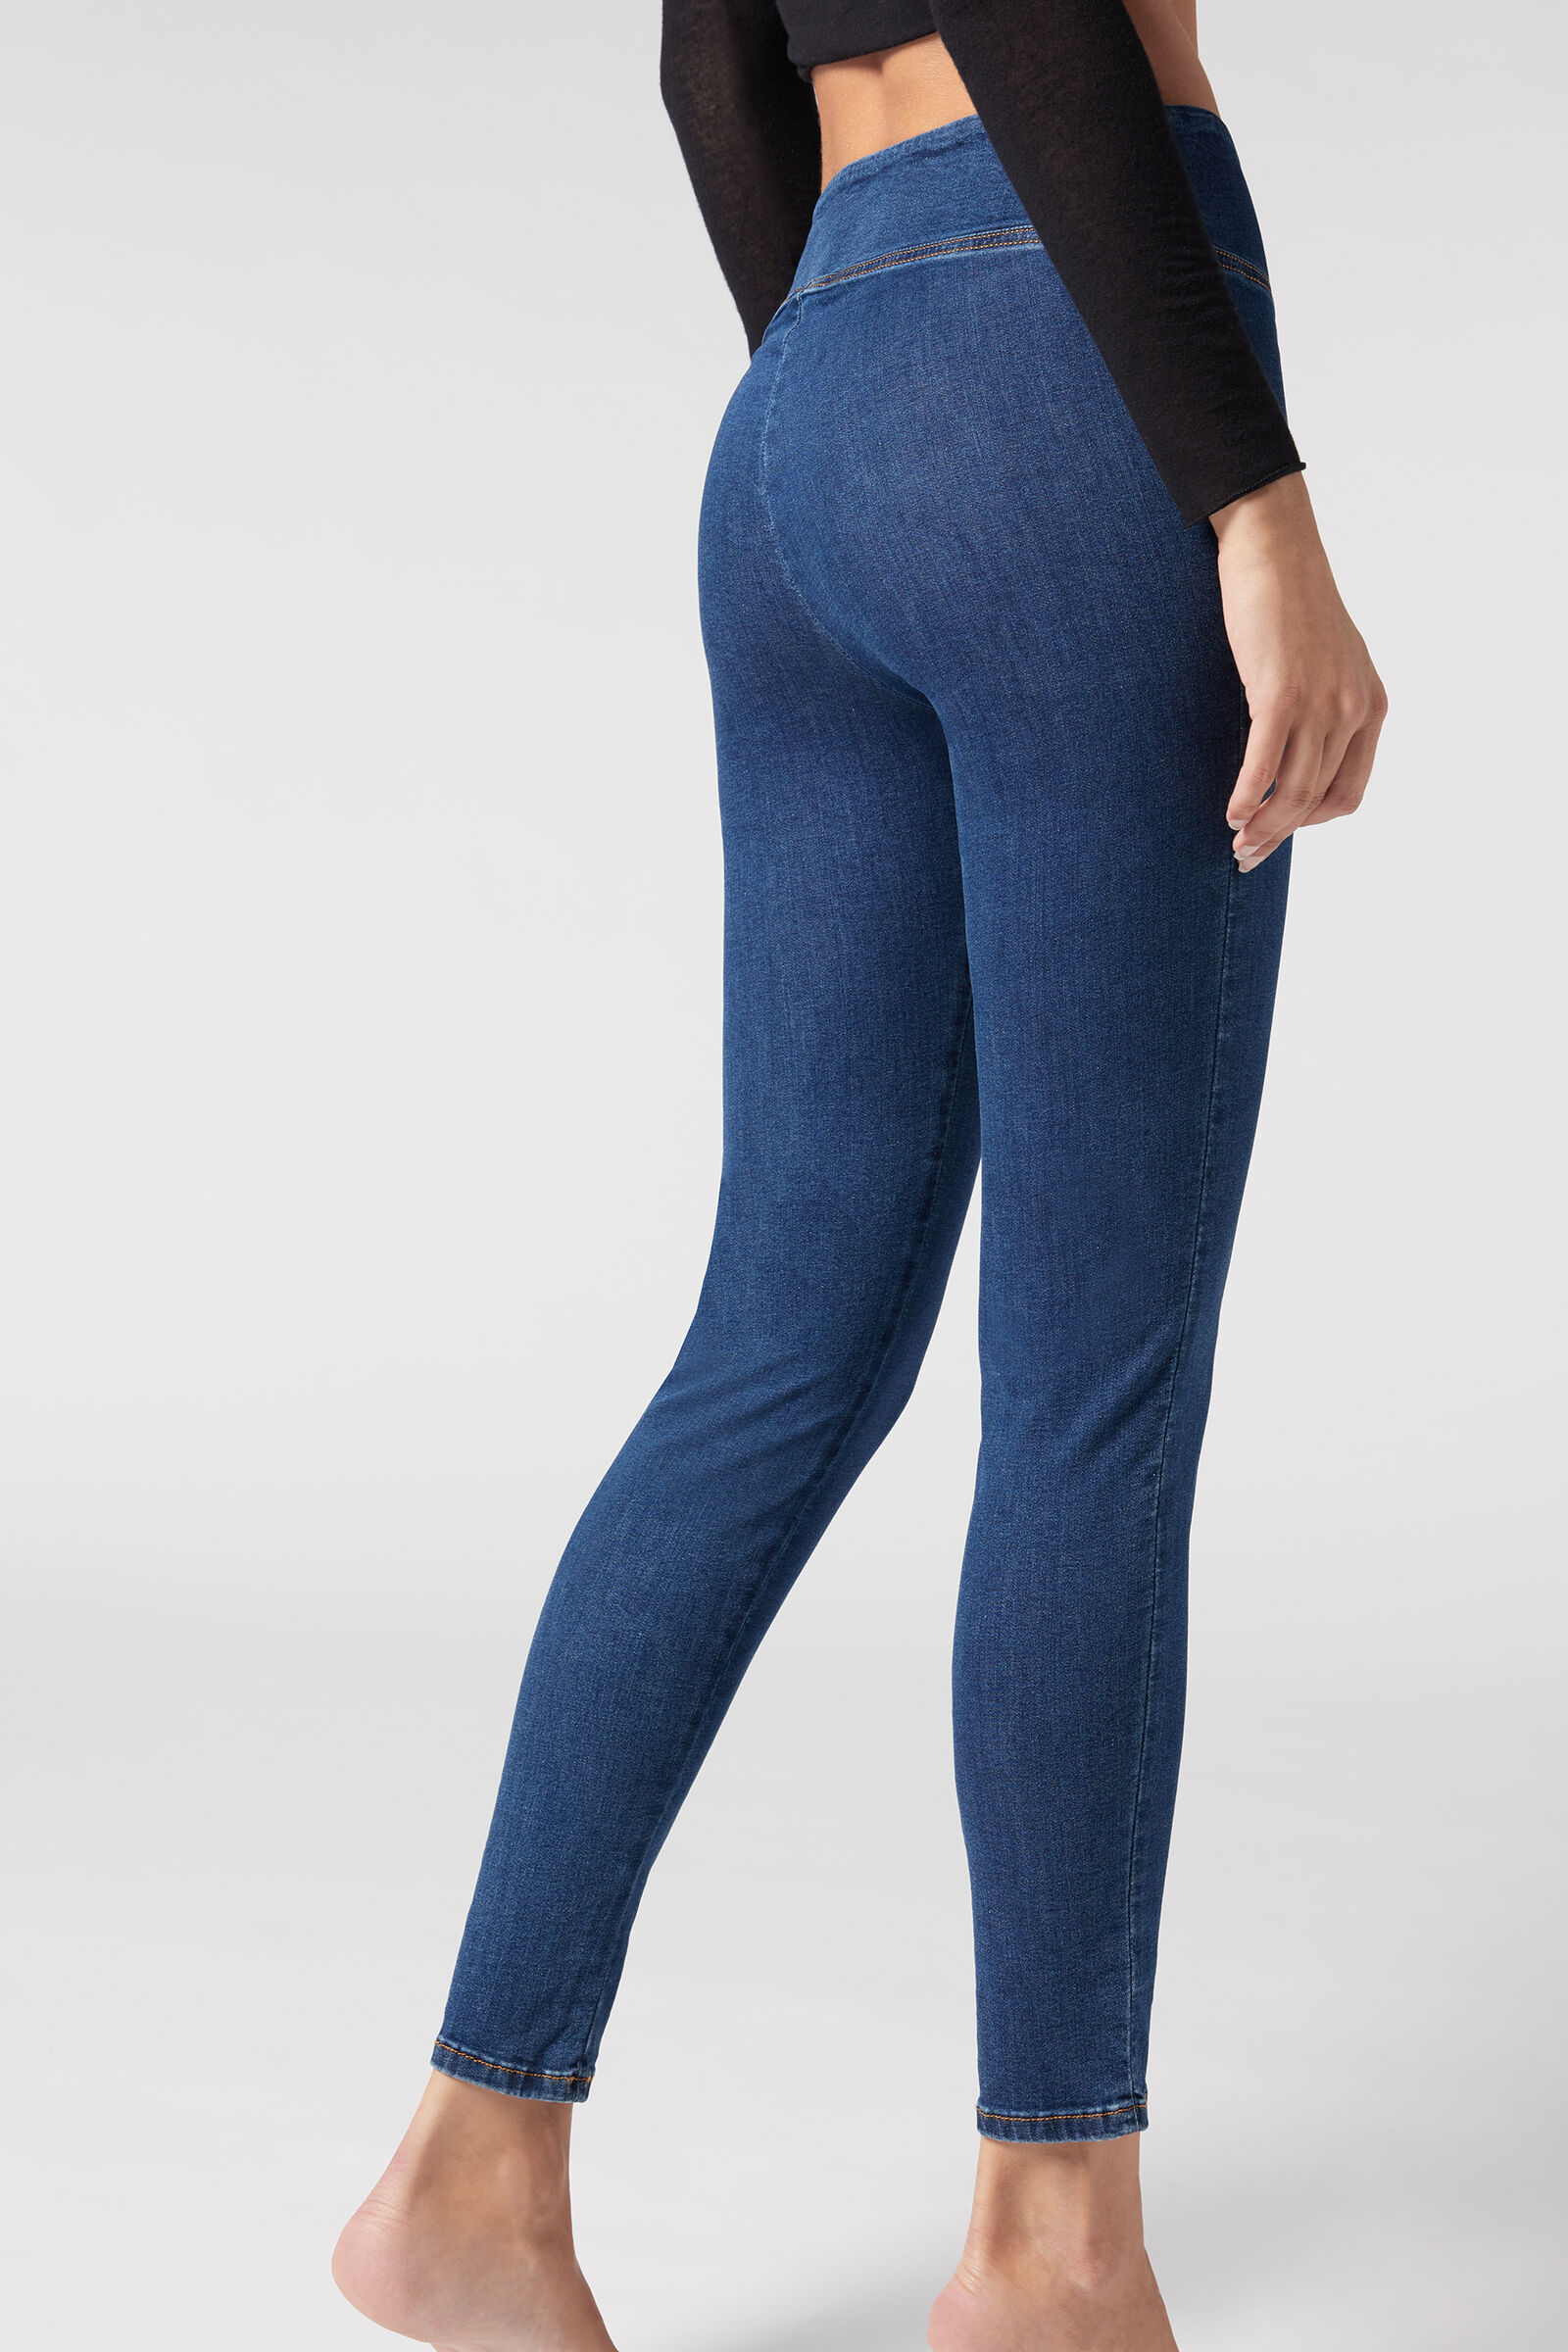 Legging Jeans Skinny - MIP023 - Calzedonia